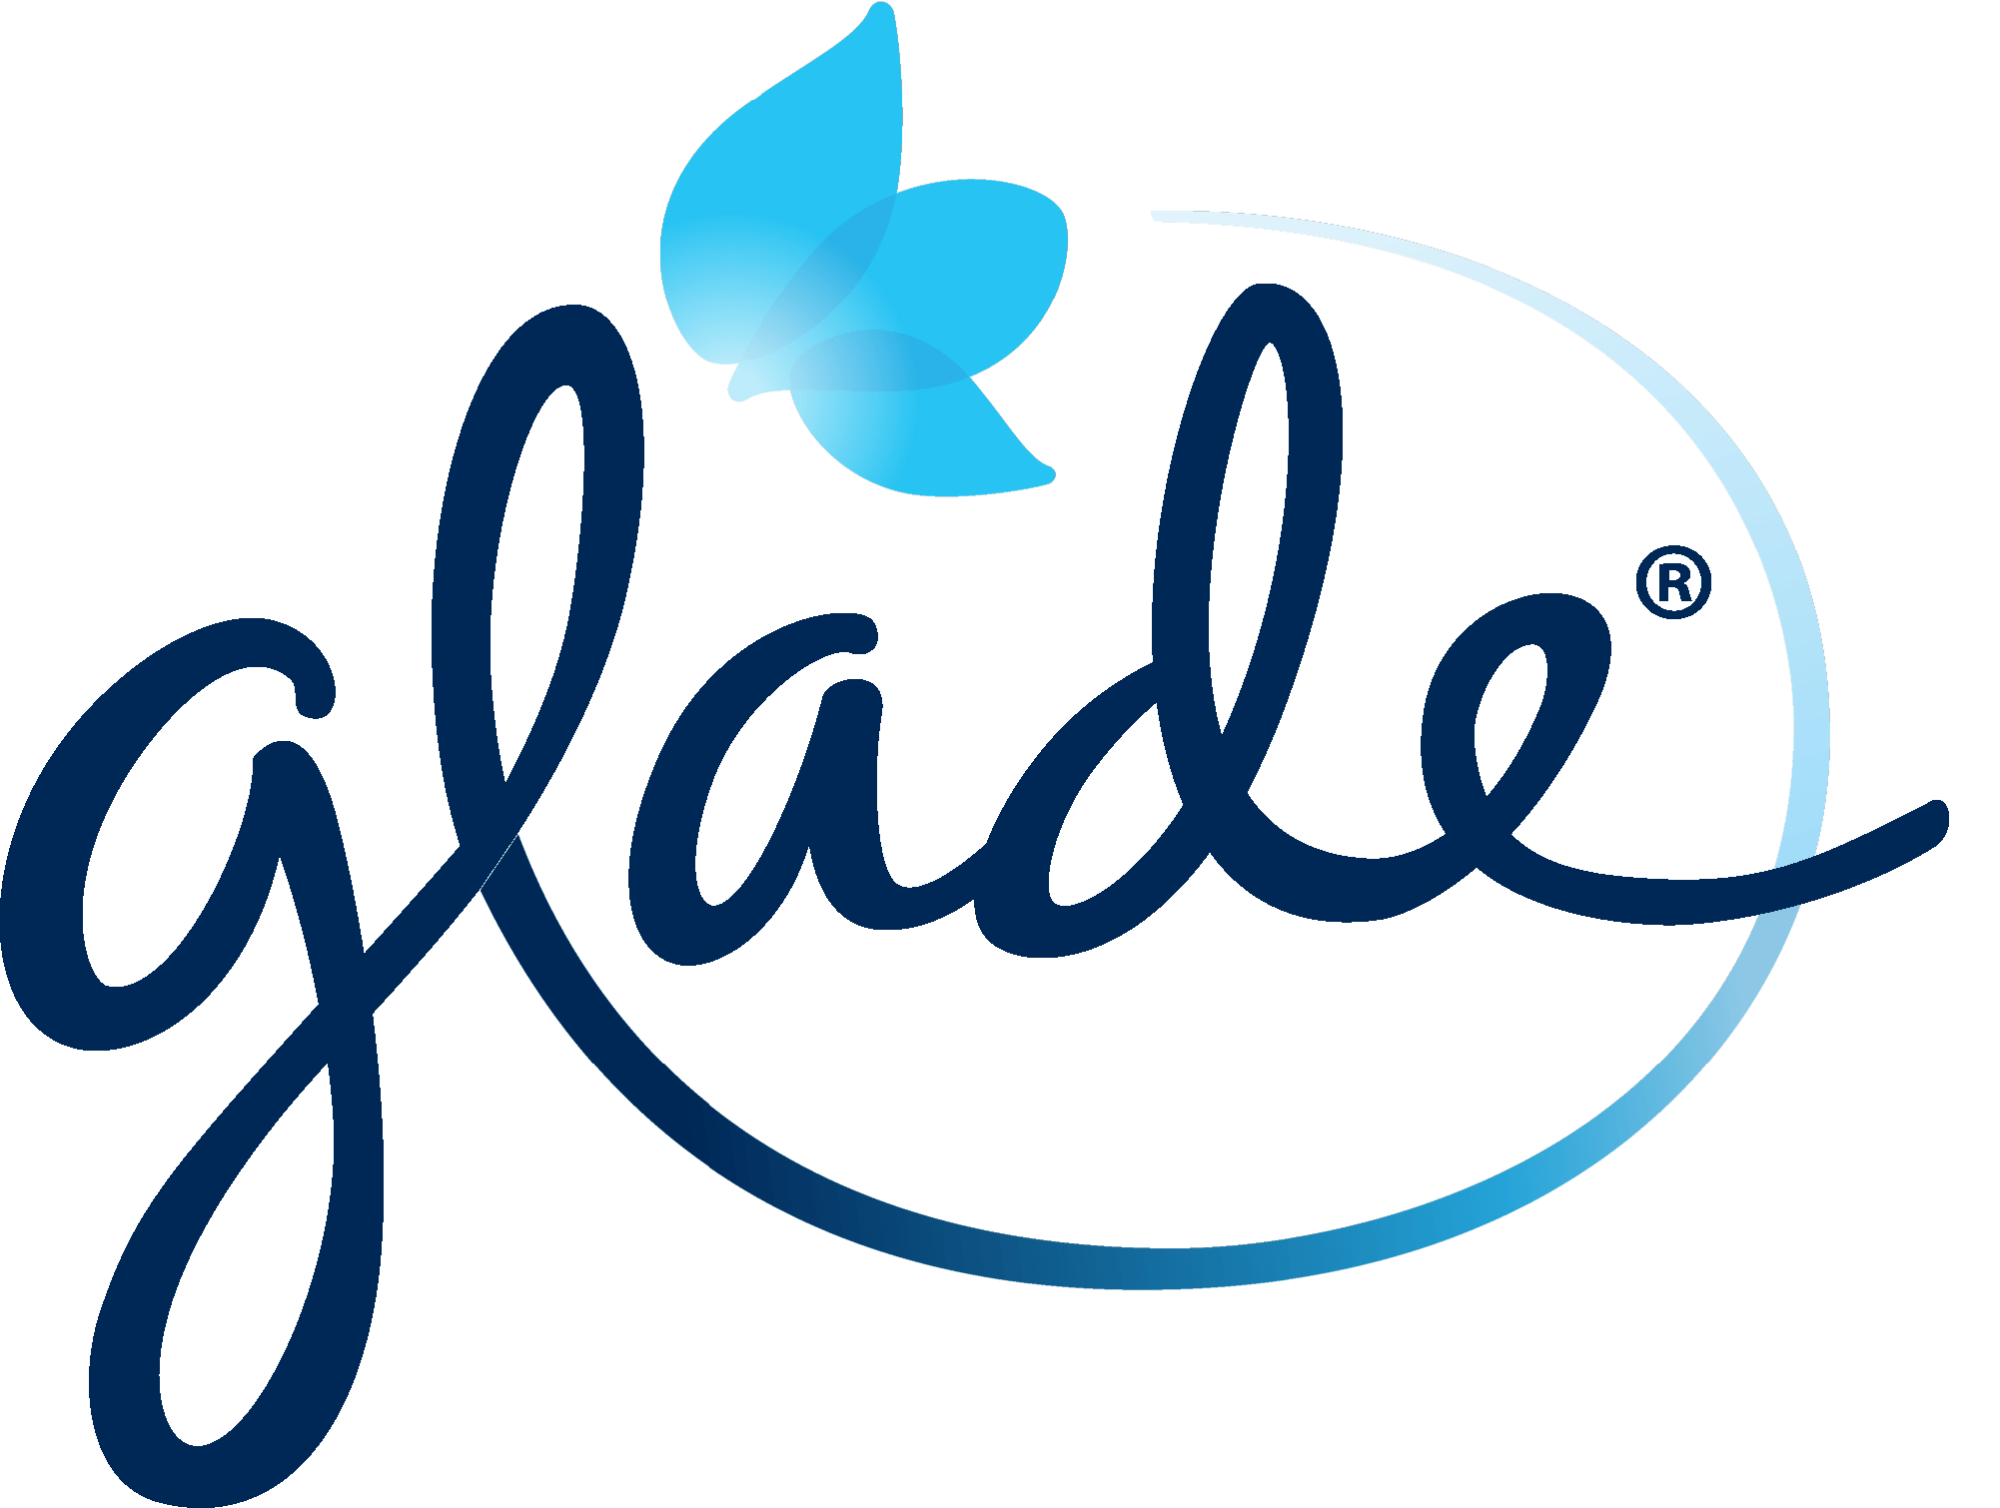 Glade logo